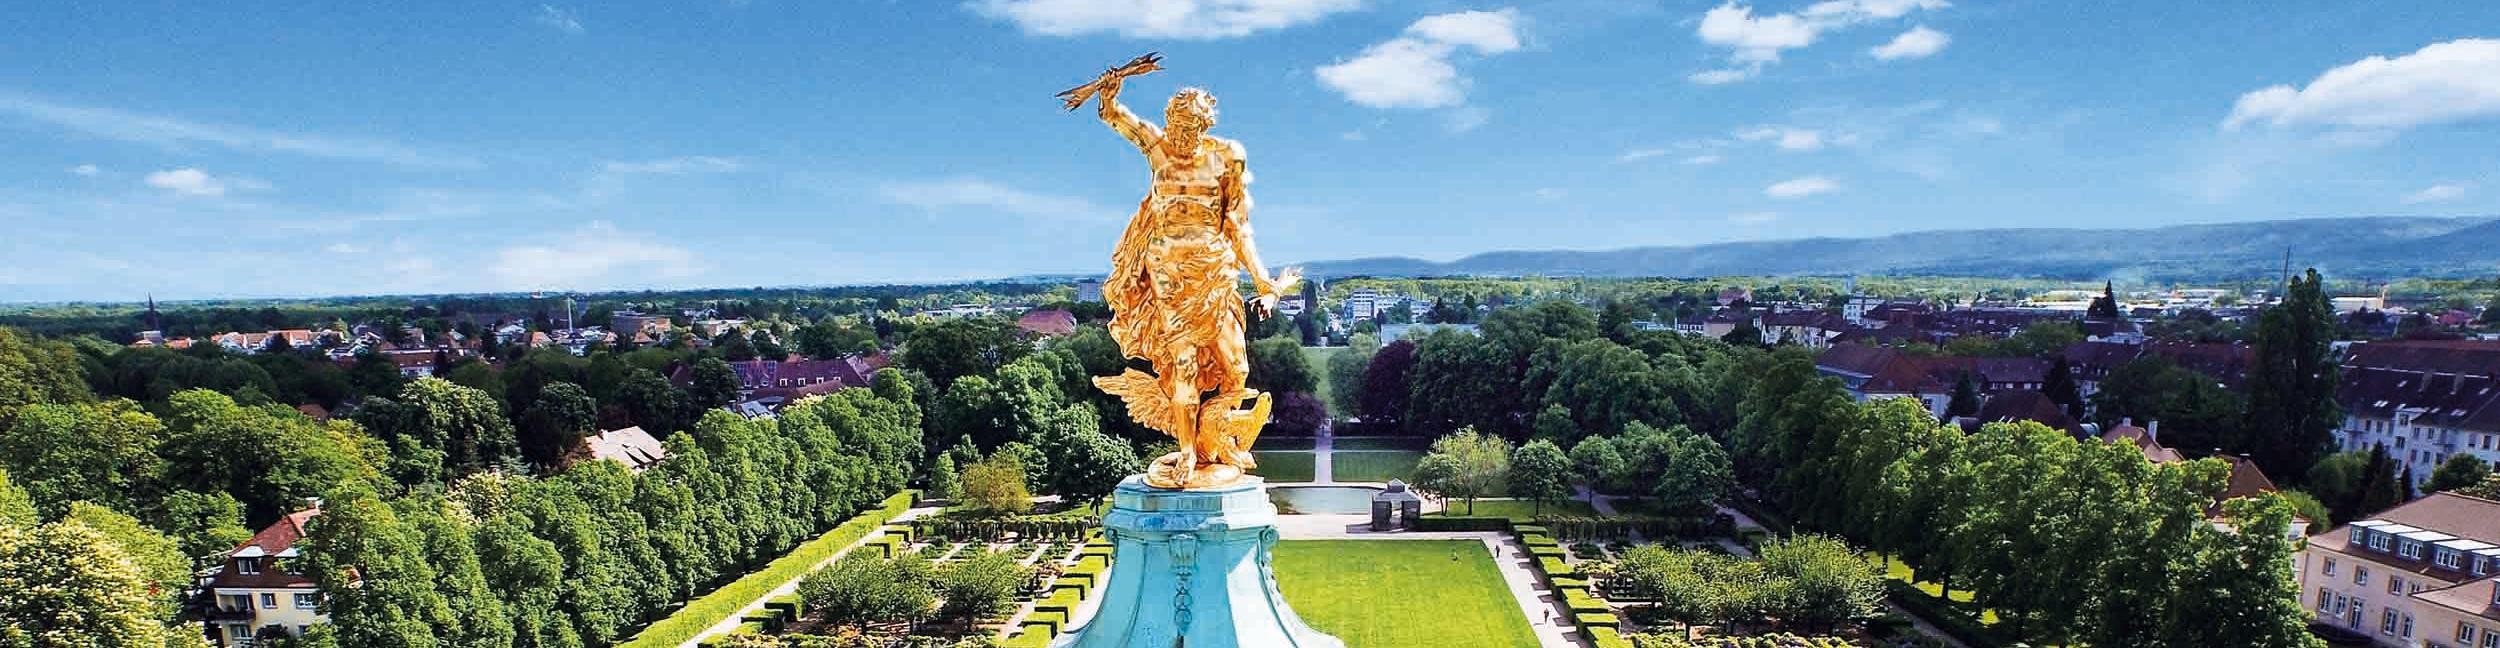 Goldener Mann auf dem Schloss Rastatt. Foto: Joachim Gerstner